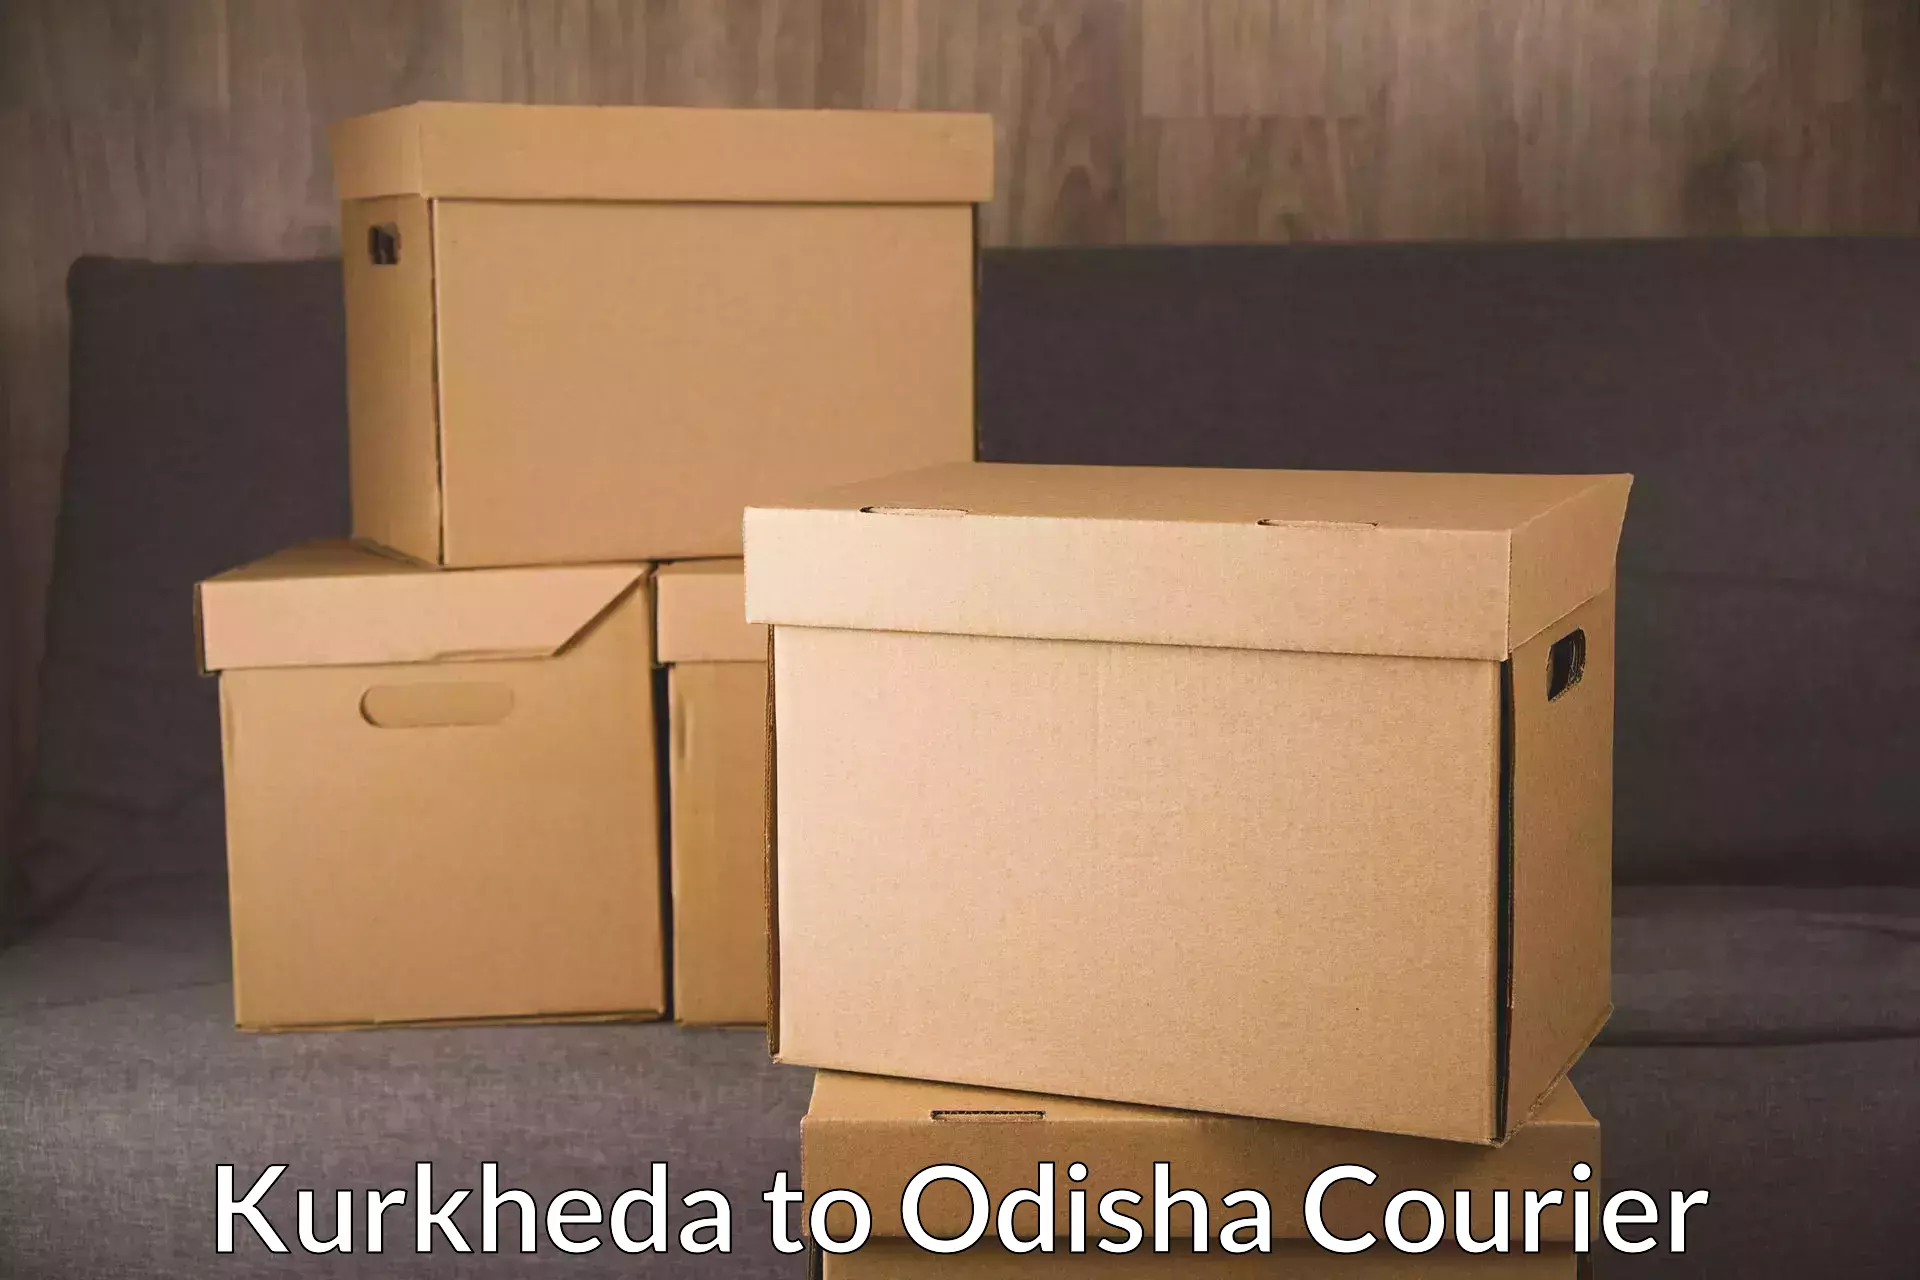 Logistics service provider Kurkheda to Jaipatna